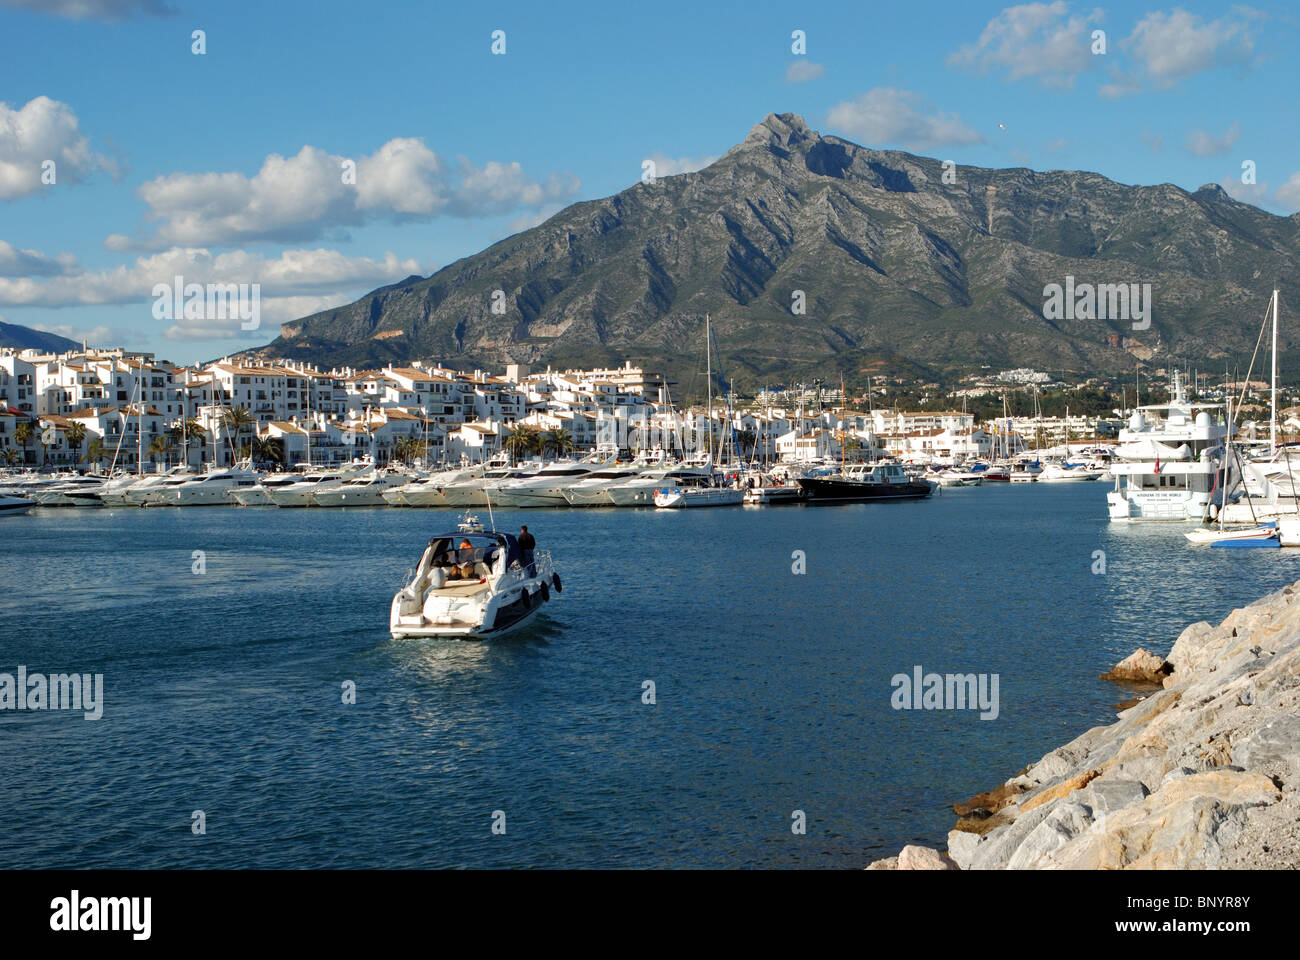 La vista sul porto e la città, a Puerto Banus a Marbella, Costa del Sol, provincia di Malaga, Andalusia, Spagna, Europa occidentale. Foto Stock